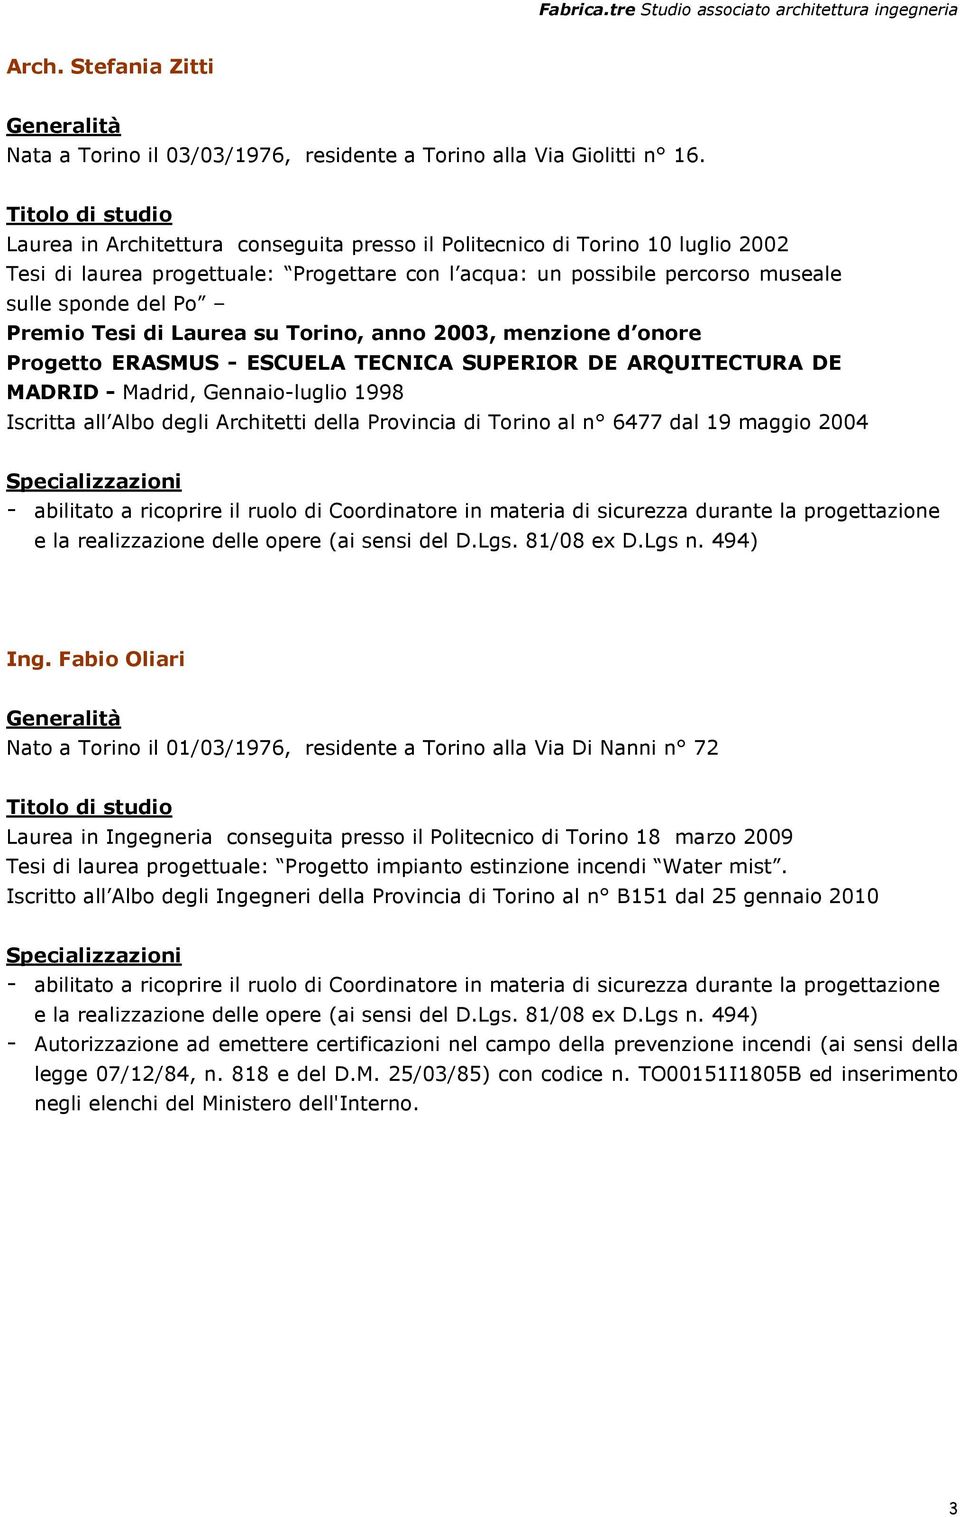 Premio Tesi di Laurea su Torino, anno 2003, menzione d onore Progetto ERASMUS - ESCUELA TECNICA SUPERIOR DE ARQUITECTURA DE MADRID - Madrid, Gennaio-luglio 1998 Iscritta all Albo degli Architetti